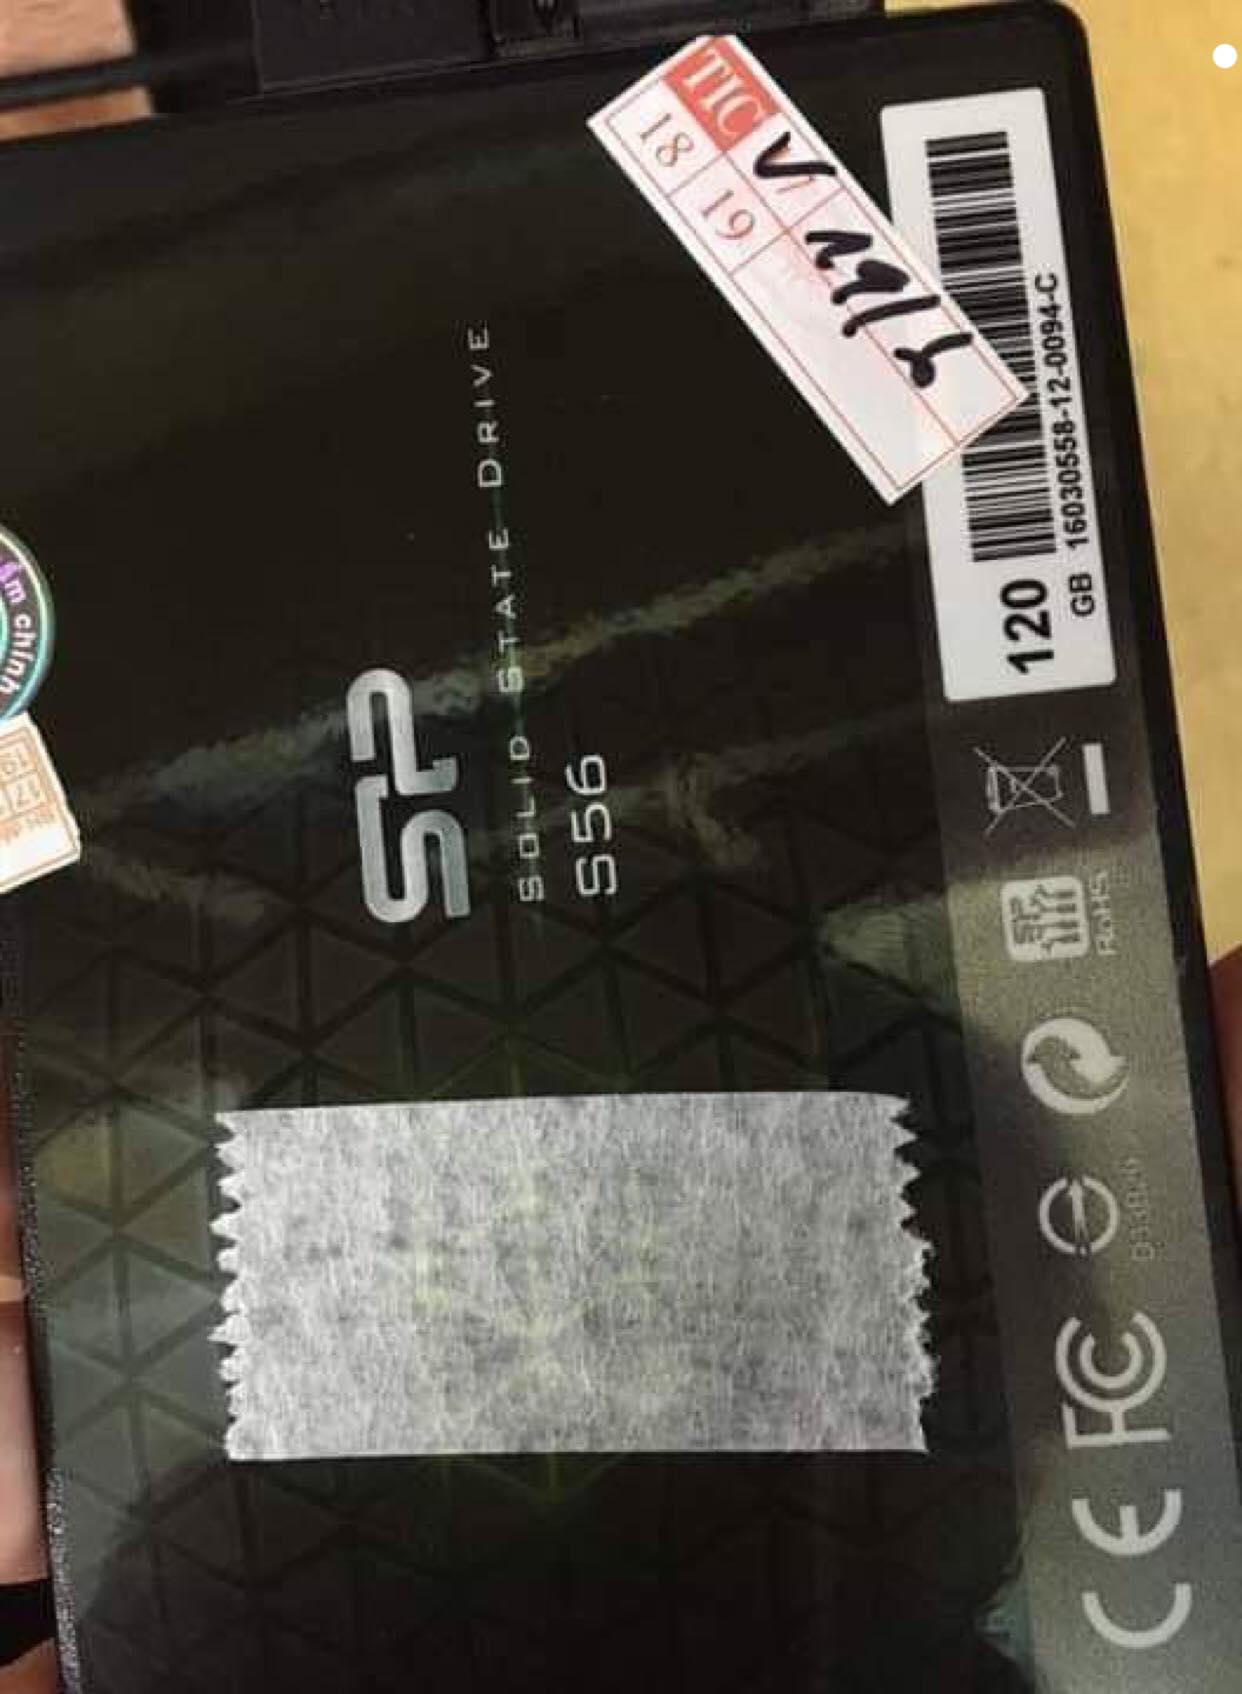 Cứu dữ liệu ổ cứng SSD 120GB không nhận 14/01/2019 - cuumaytinh